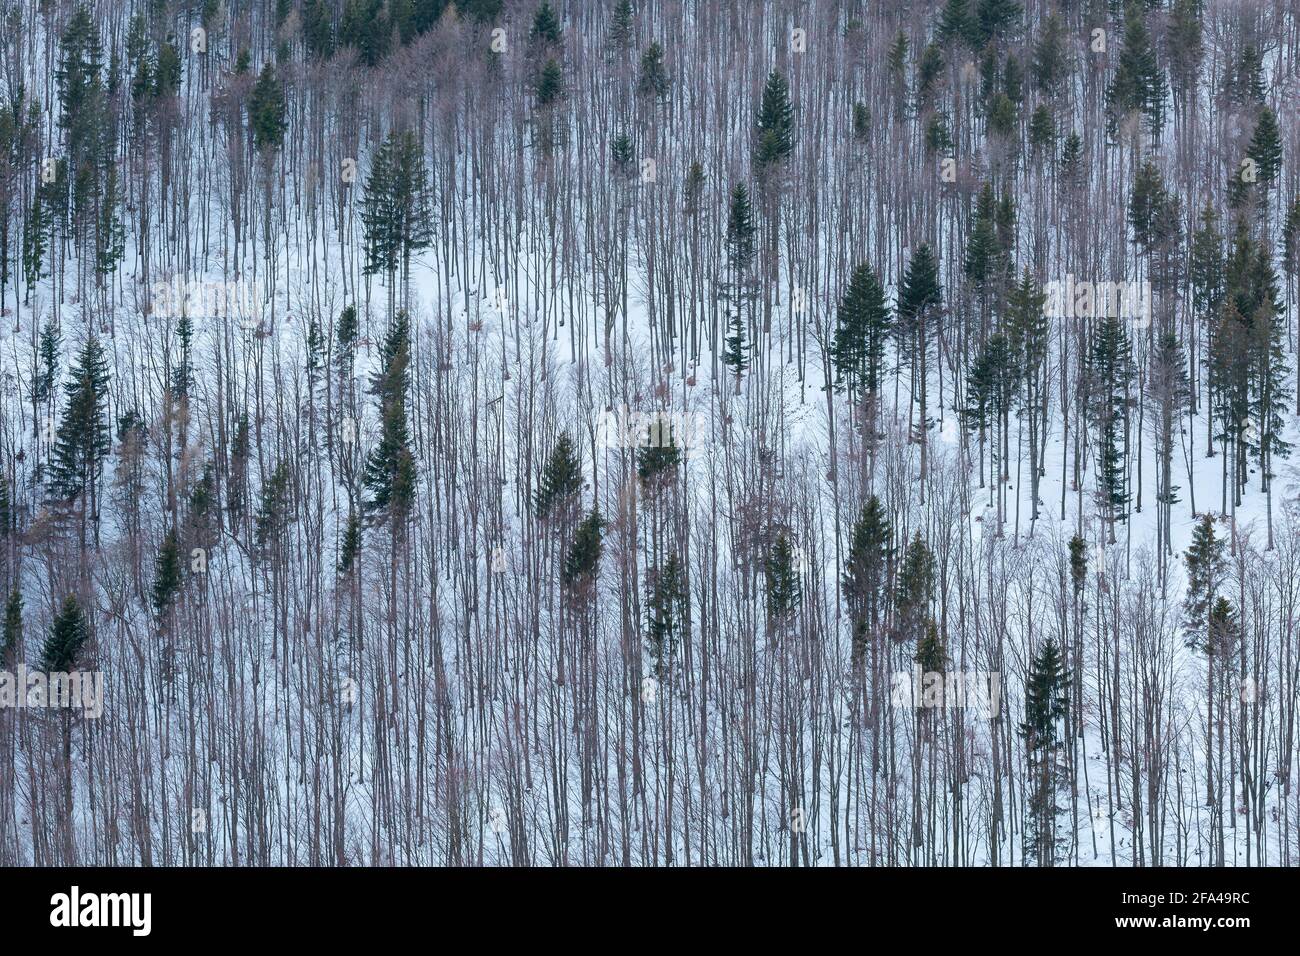 Mixed woodland in Mala Fatra mountains, Slovakia. Stock Photo